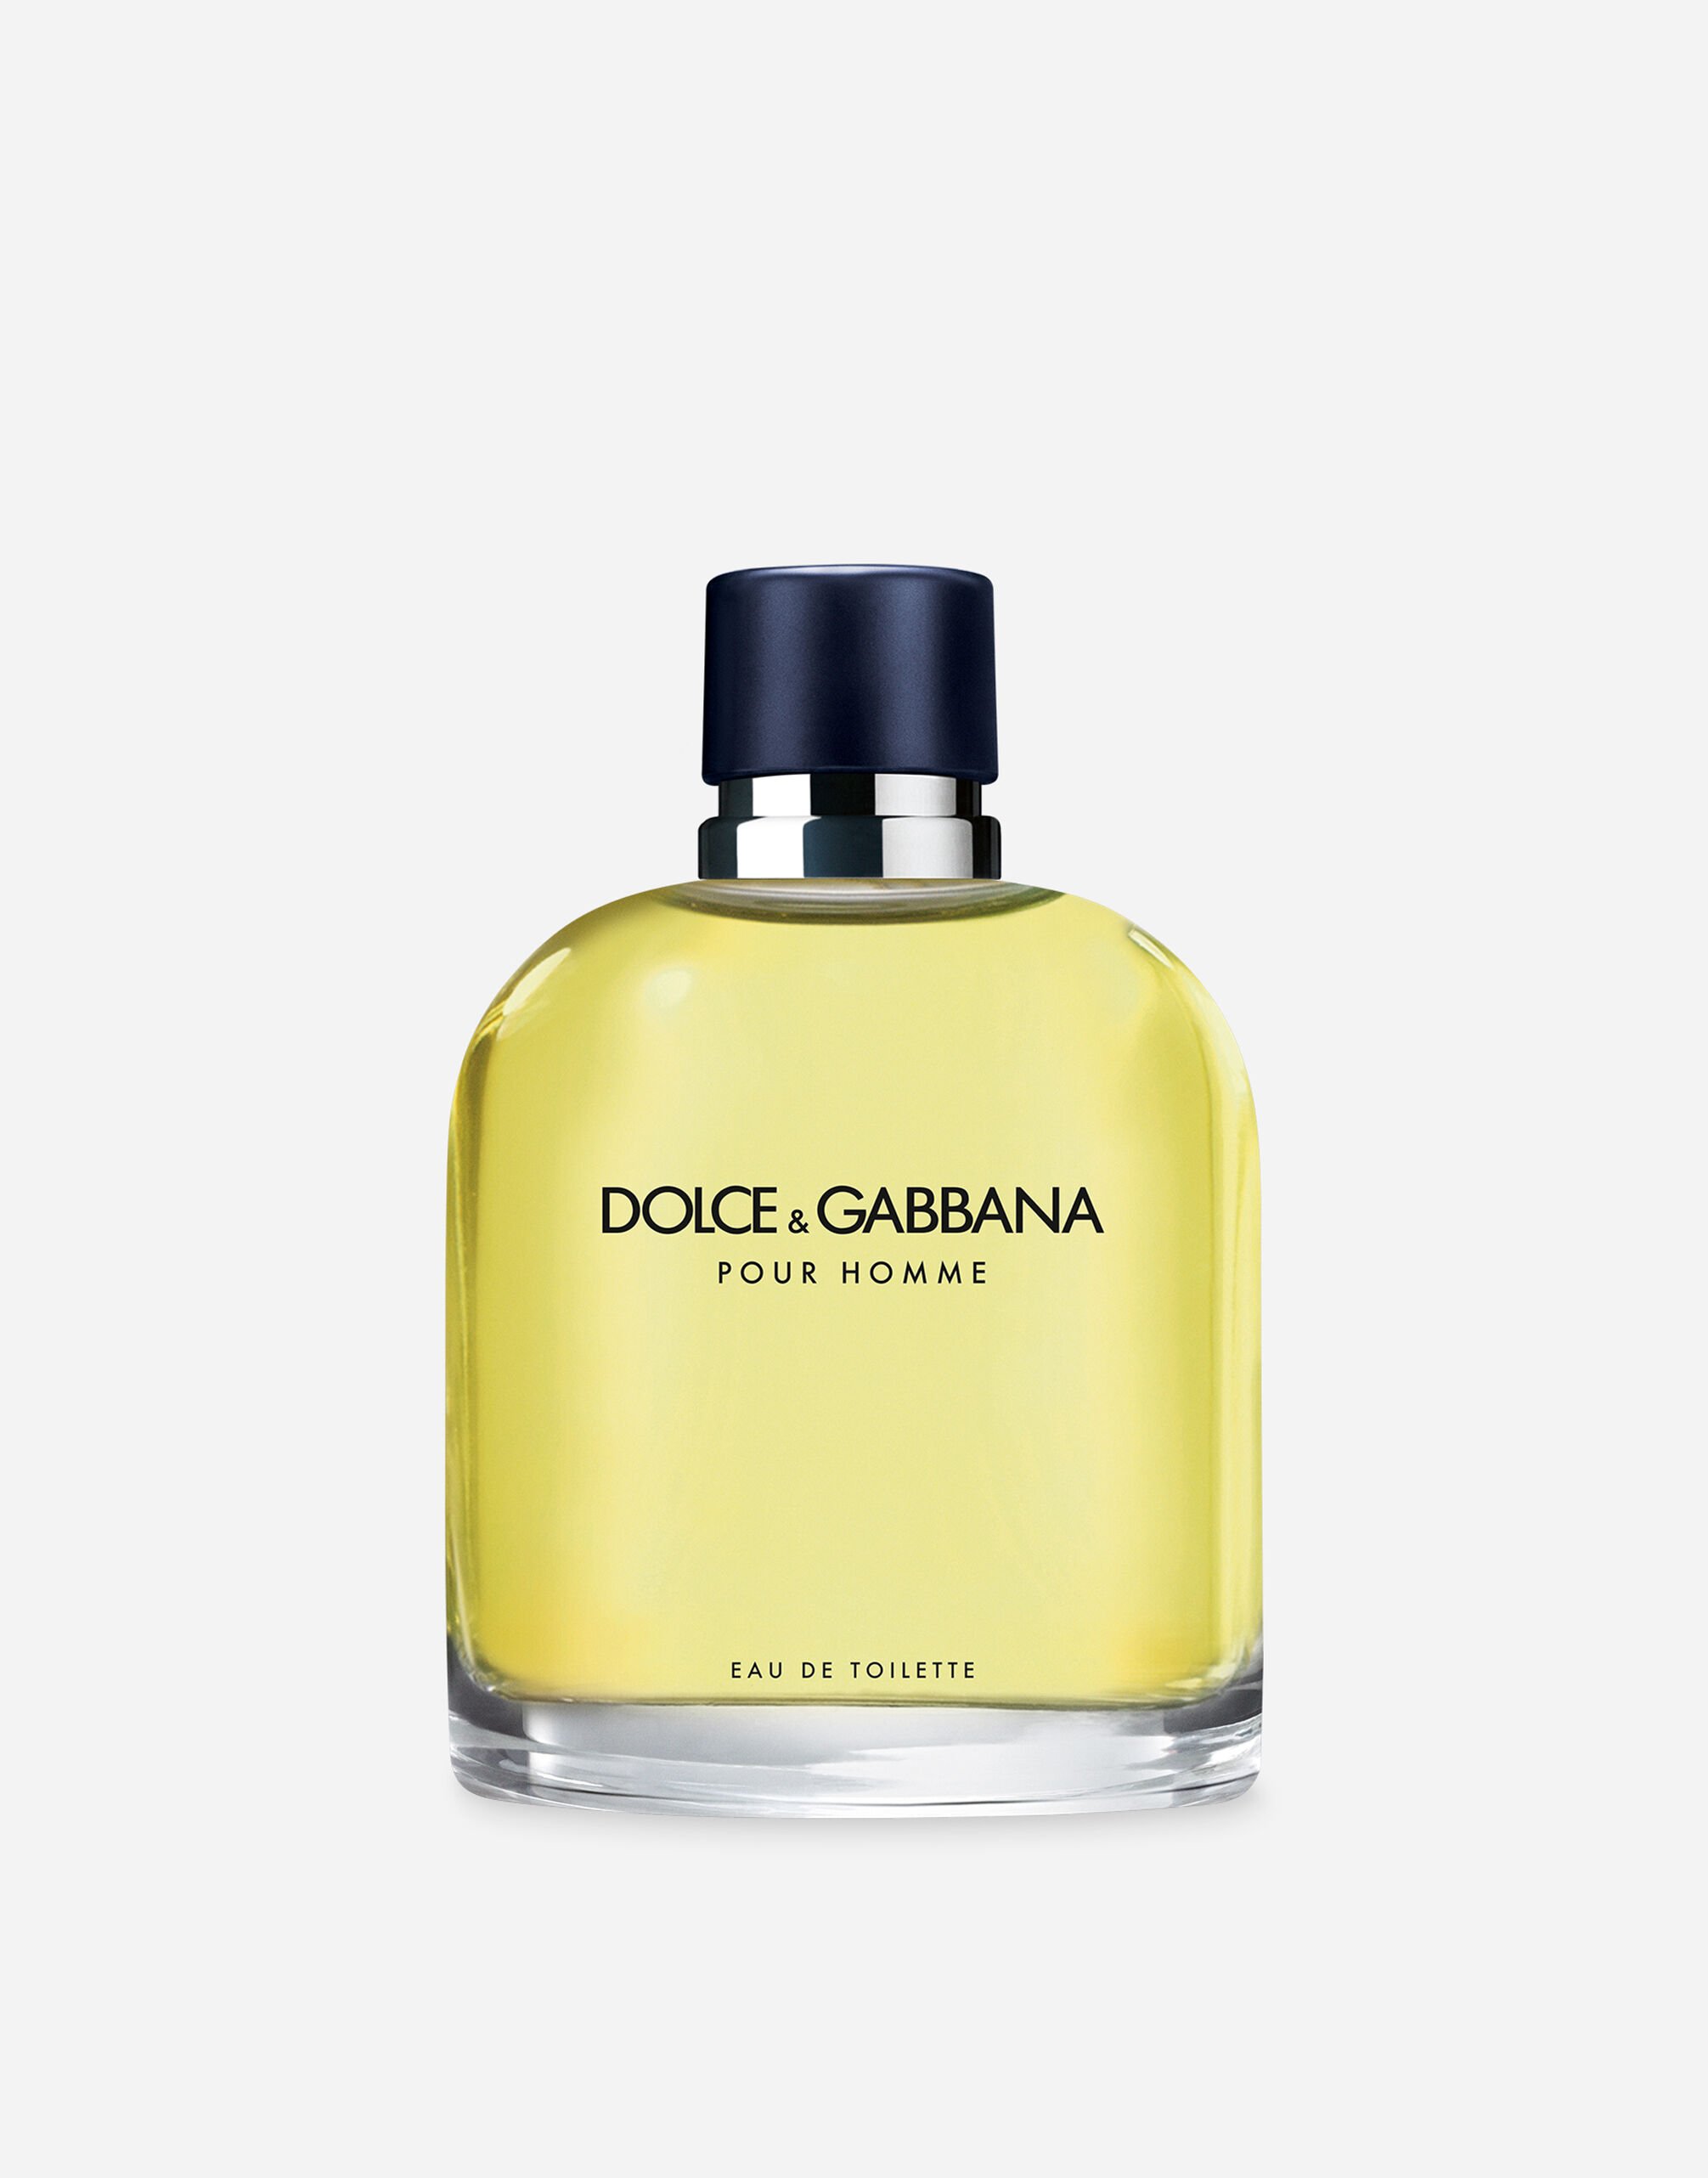 Dolce & Gabbana Pour Homme Eau de Toilette - VT001KVT000